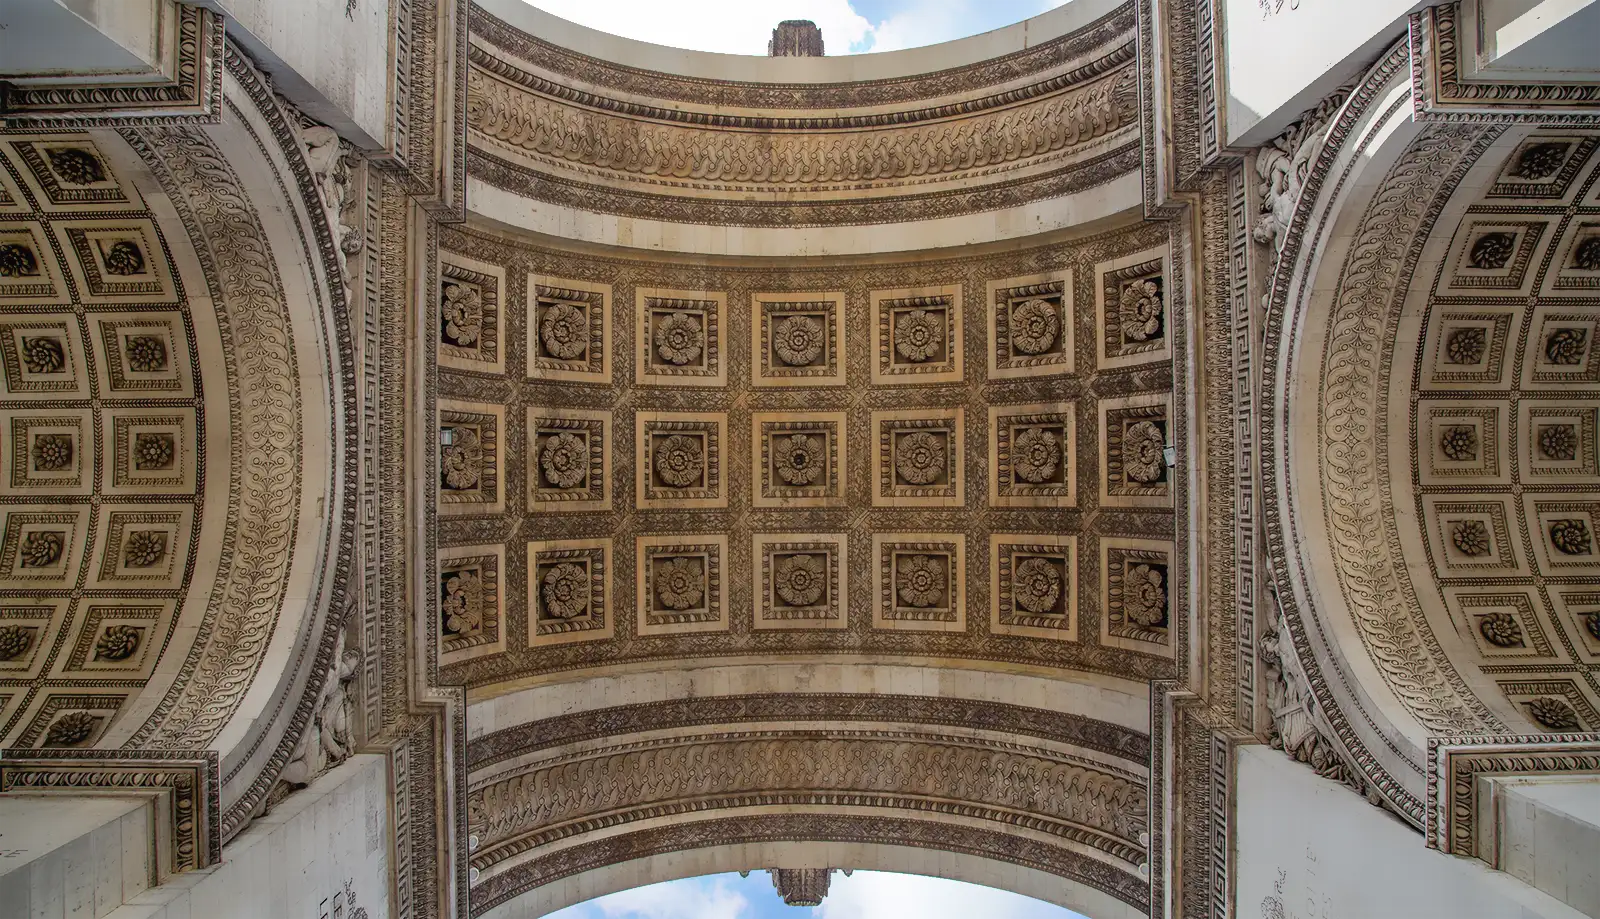 Hình ảnh mái vòm gồm các bức điêu khắc hoa hồng